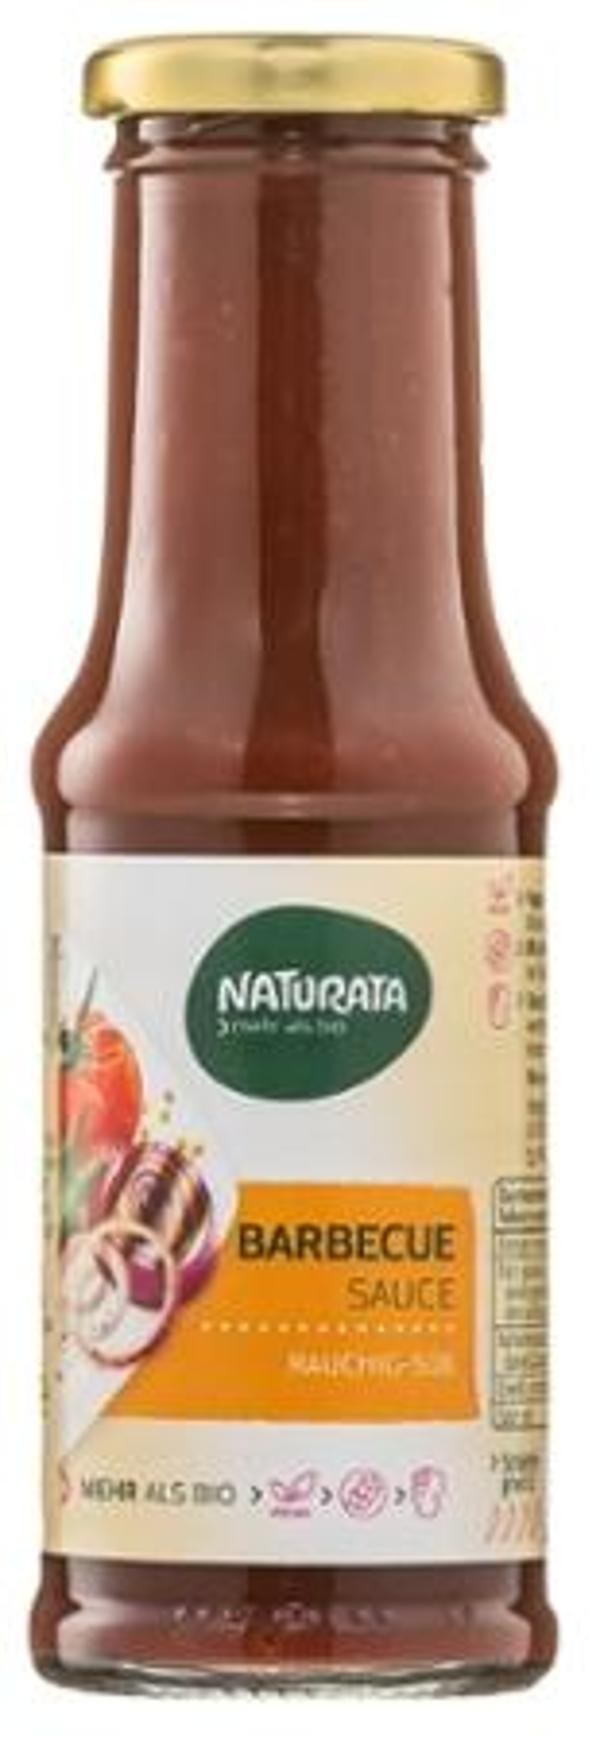 Produktfoto zu Barbecue Sauce von Naturata